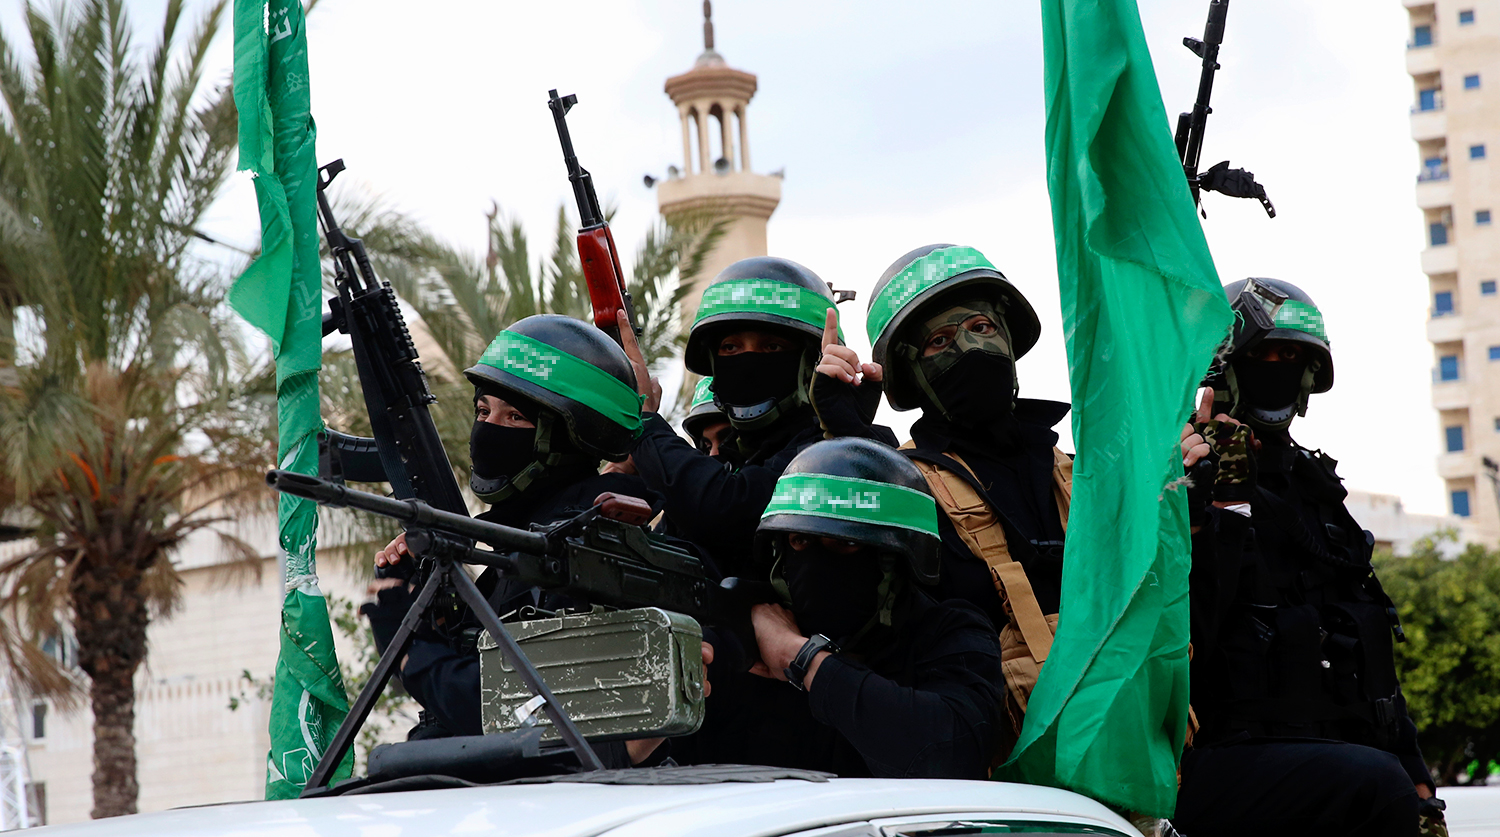 30 лет назад было создано палестинское исламистское движение ХАМАС -  Газета.Ru